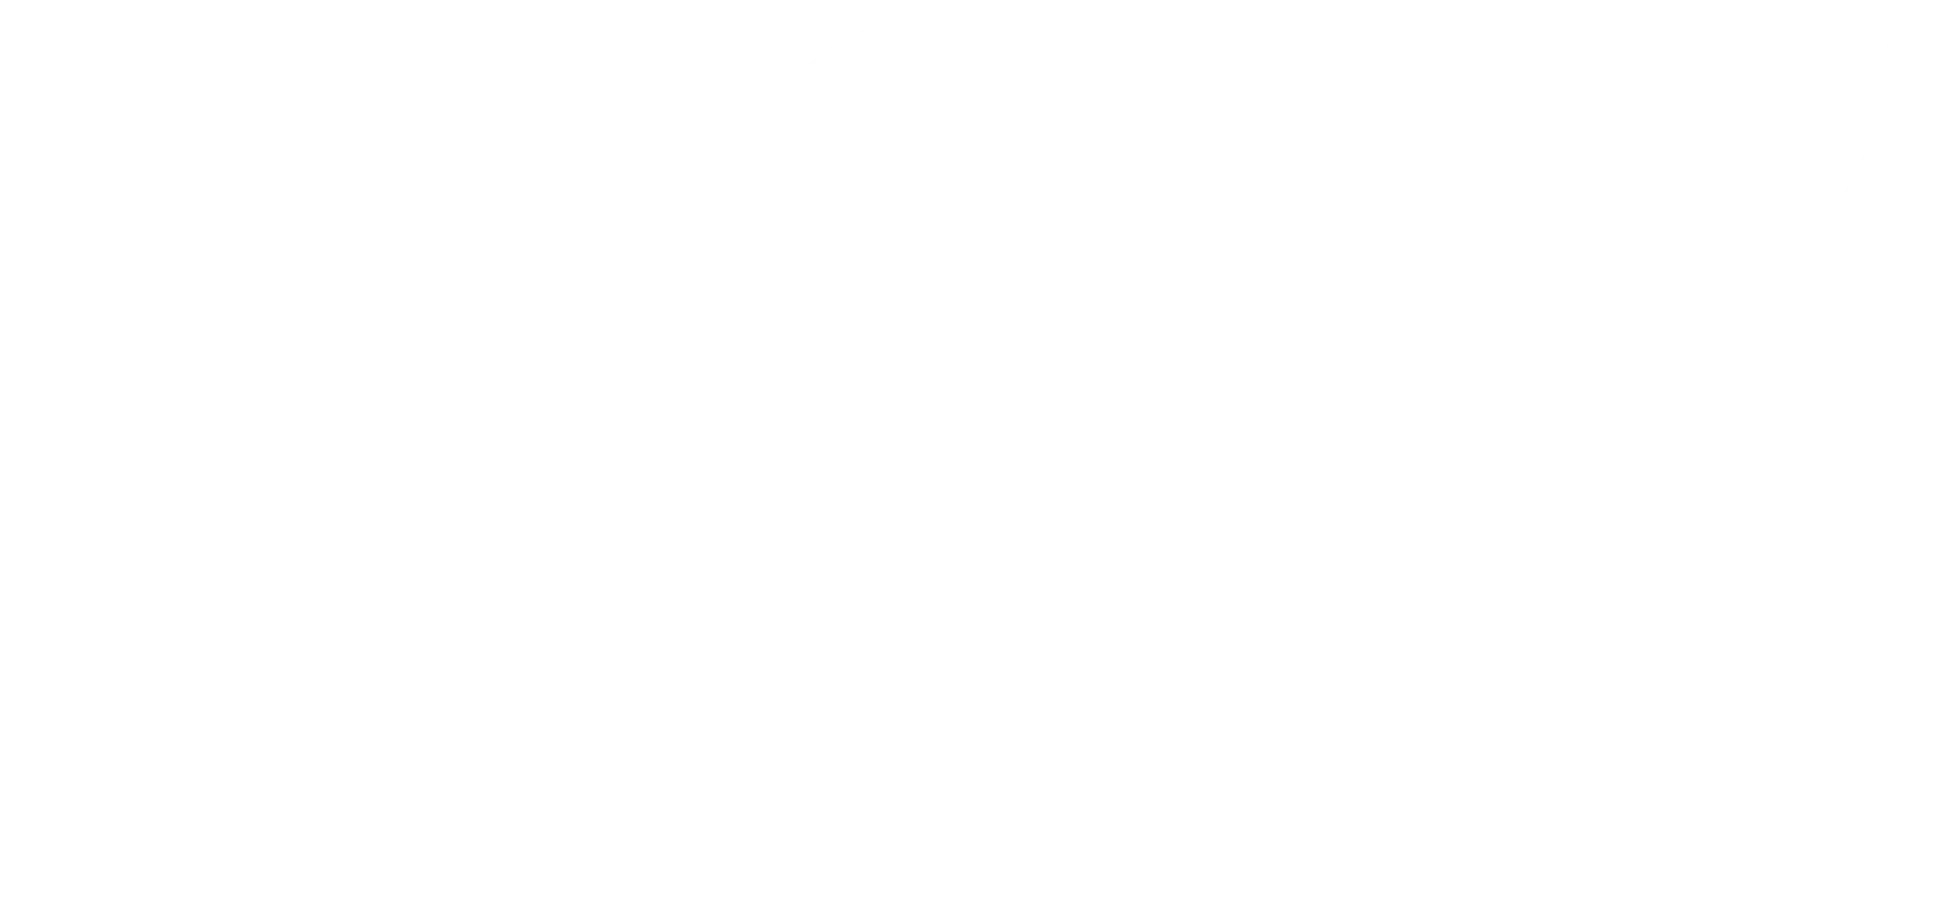 Joy-1 logo